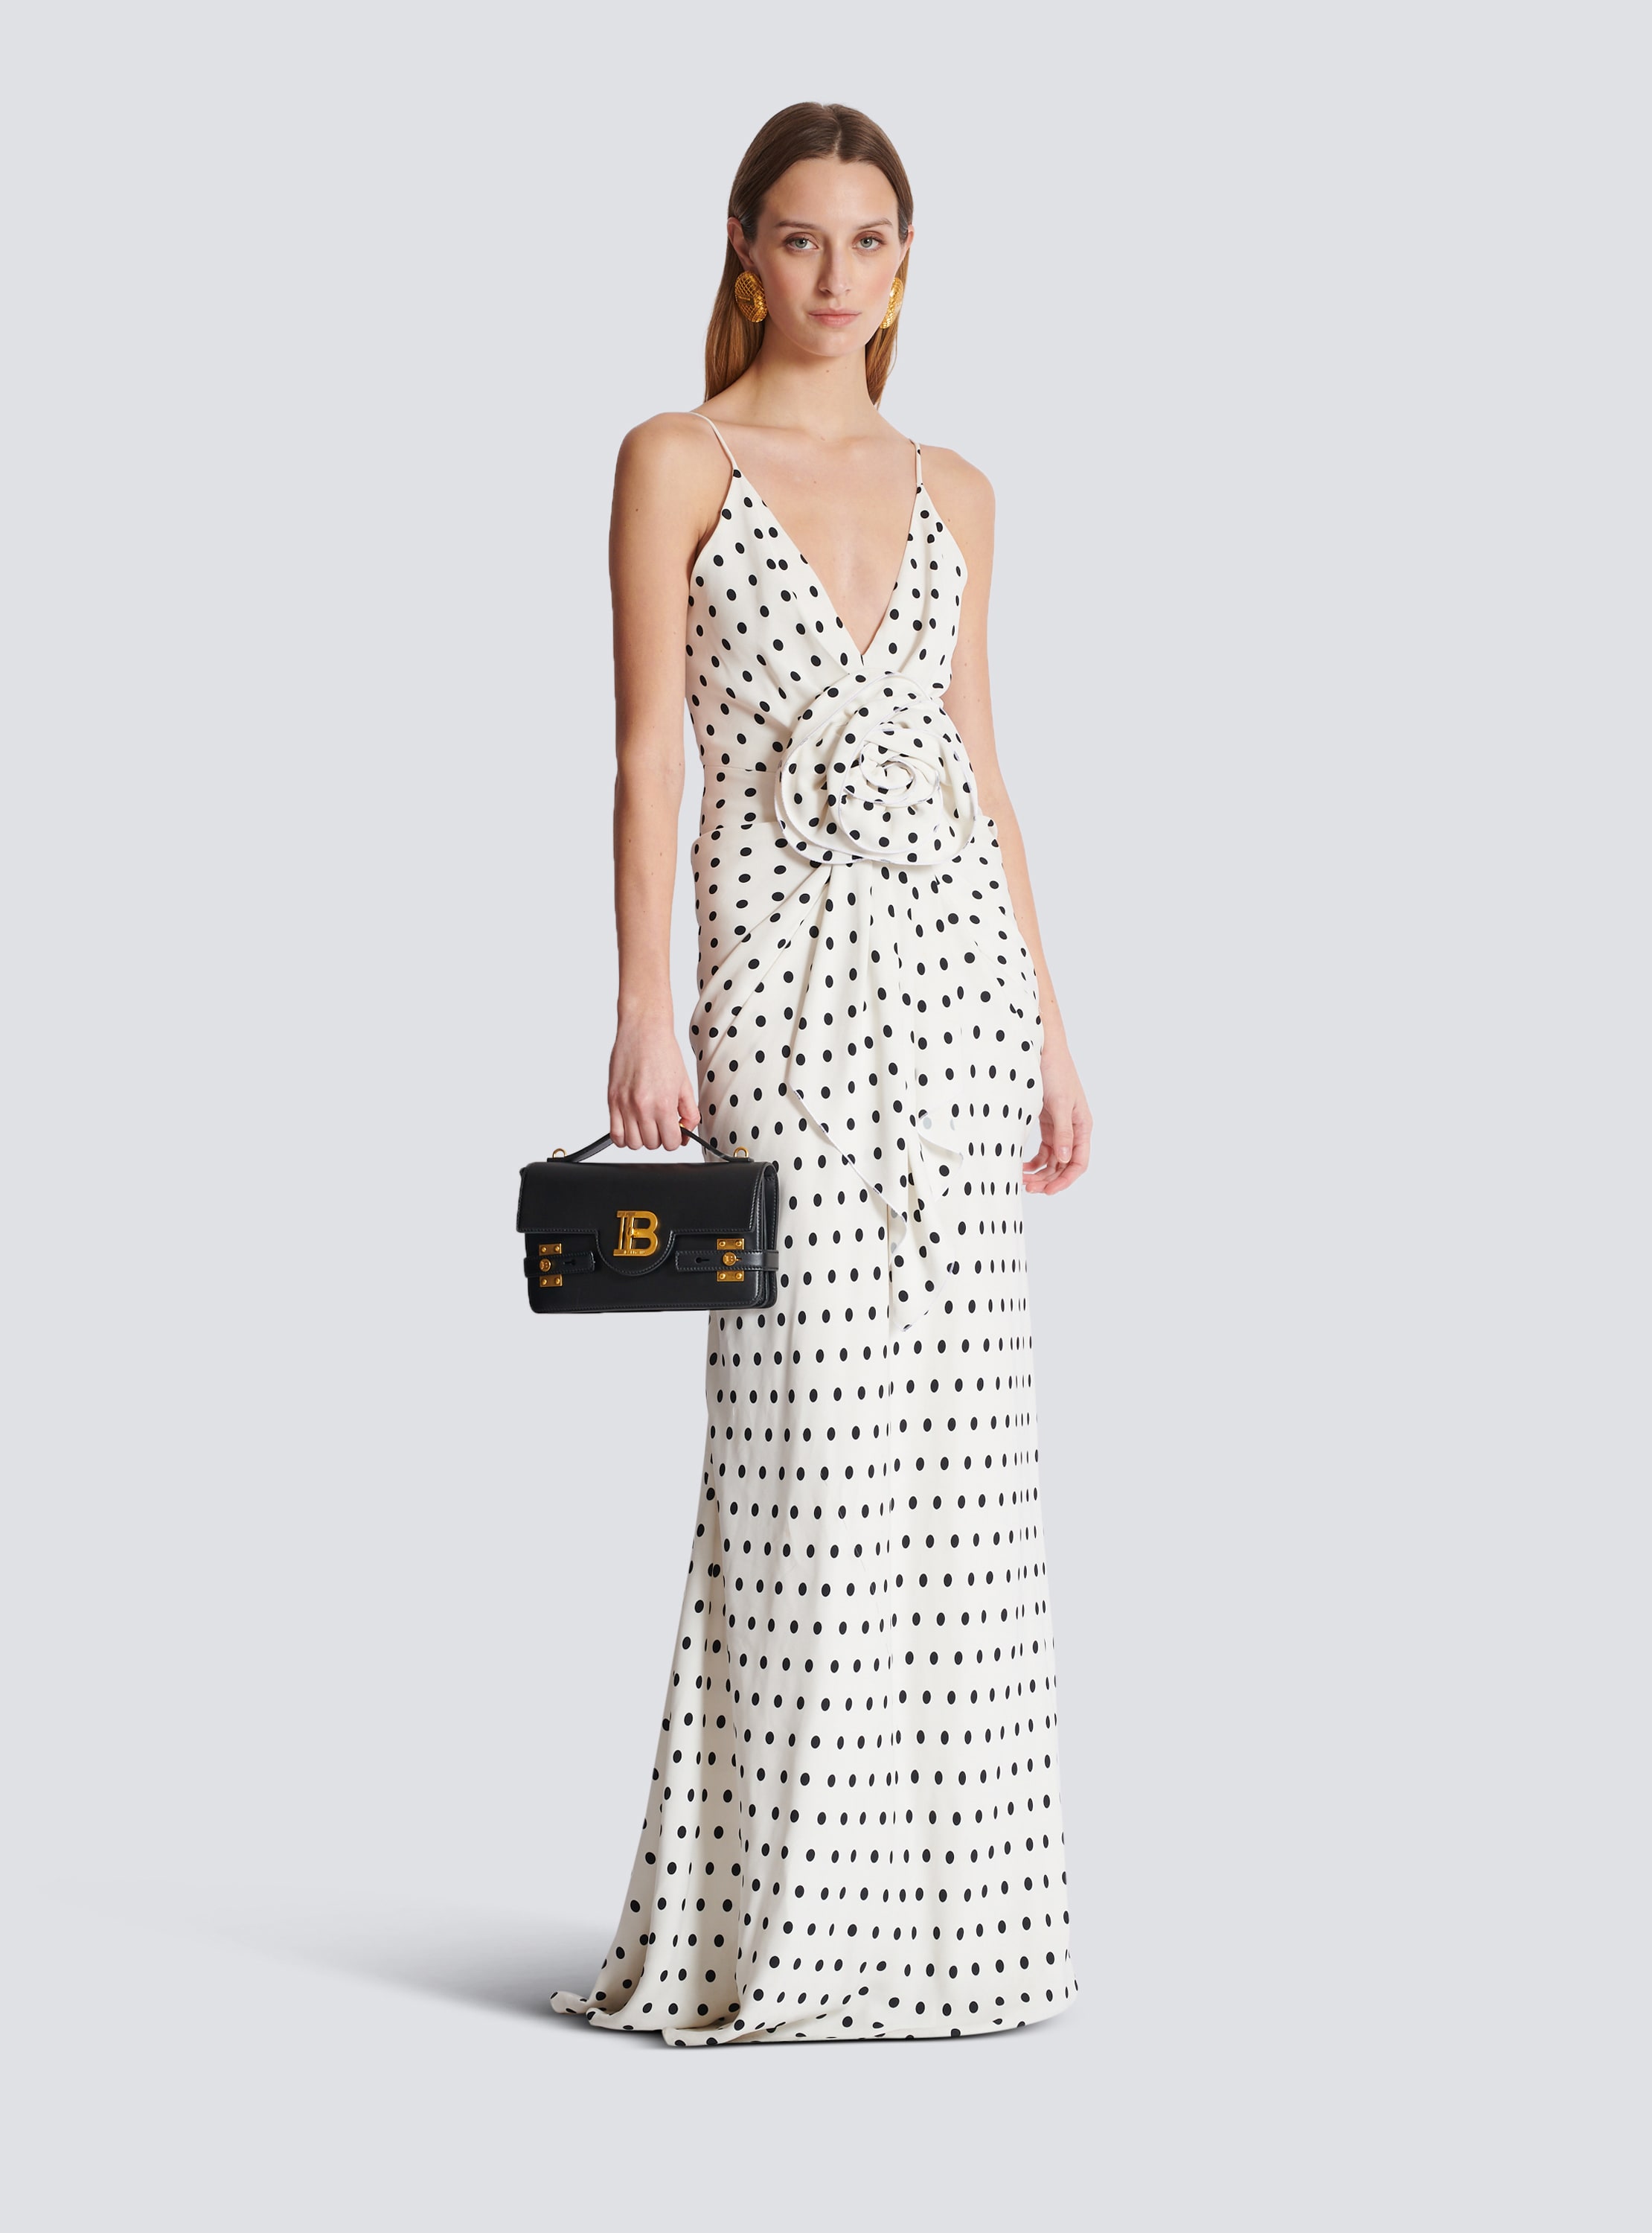 Langes Kleid mit Polka Dots-Print